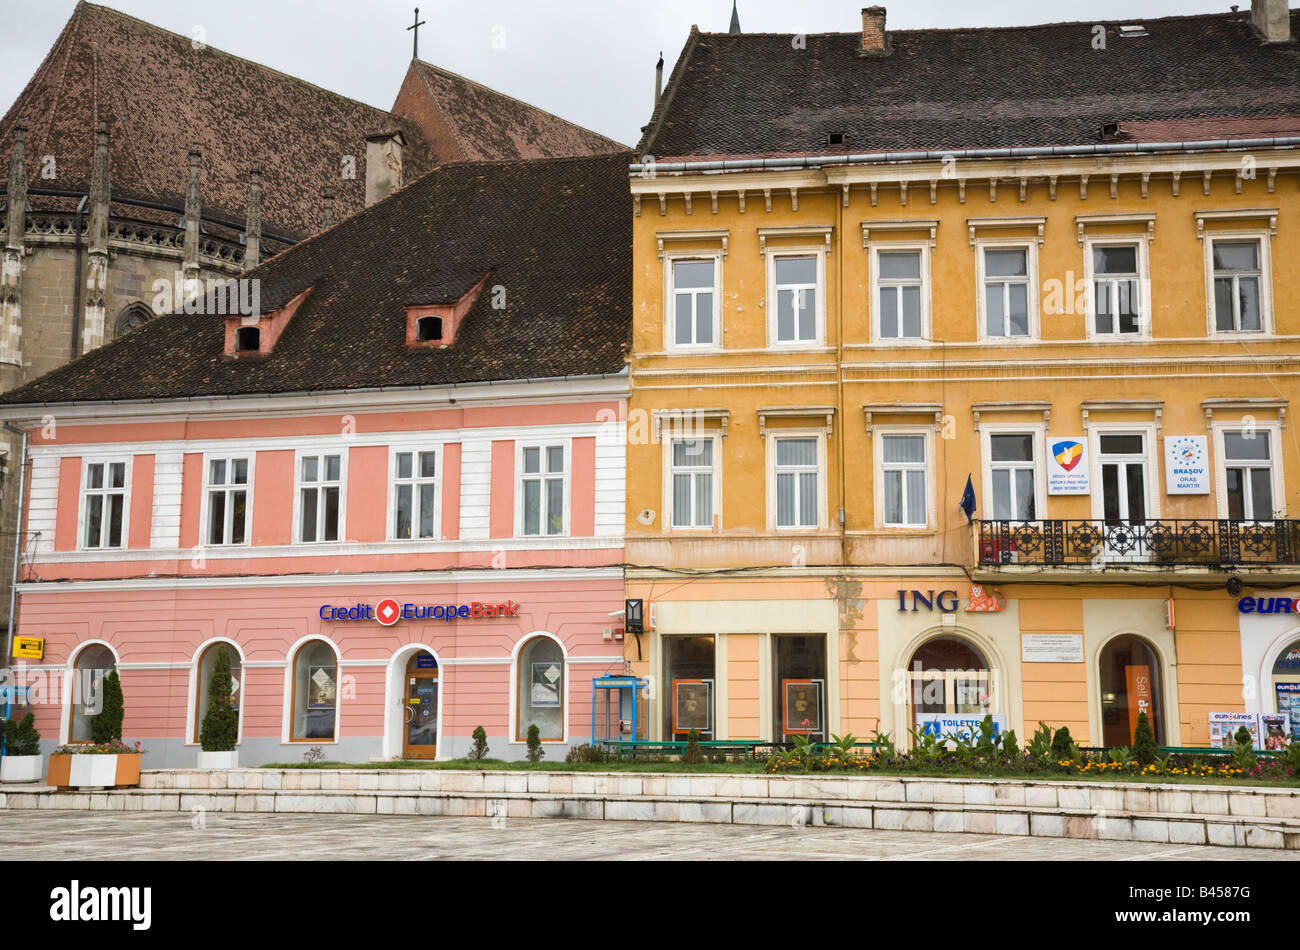 Rumania Europa Europa de crédito y bancos de ING en edificios históricos en la plaza del centro de la ciudad Foto de stock